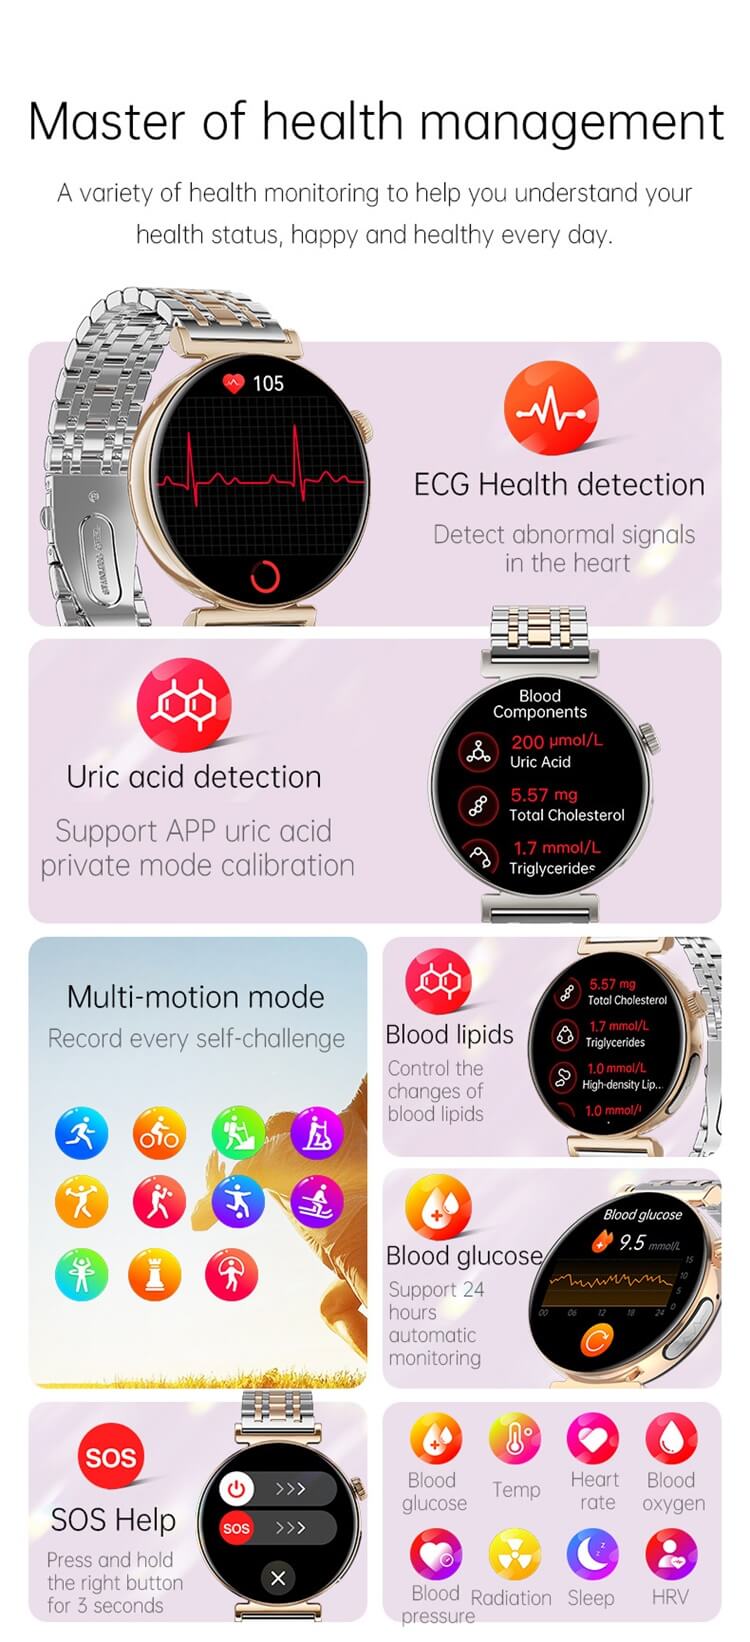 JA02 Smartwatch 1,28 Zoll AMOLED-Bildschirm EKG-Gesundheitserkennung Bluetooth-Anruf-Shenzhen Shengye Technology Co.,Ltd